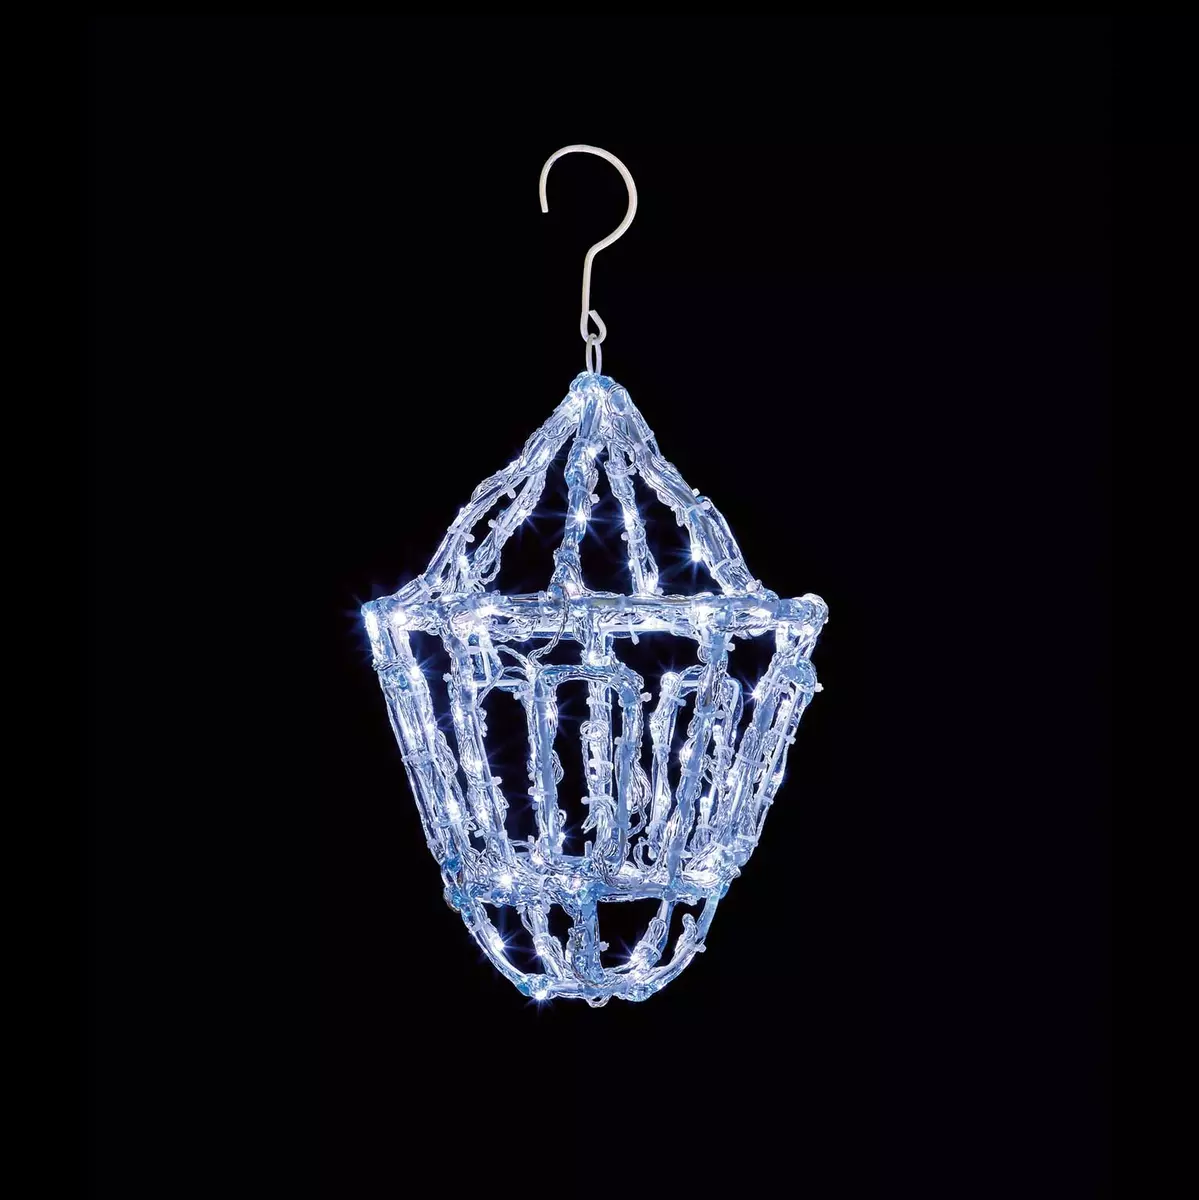 Soft Acrylic LED Hanging Lantern - Cool White - 39cm - image 1